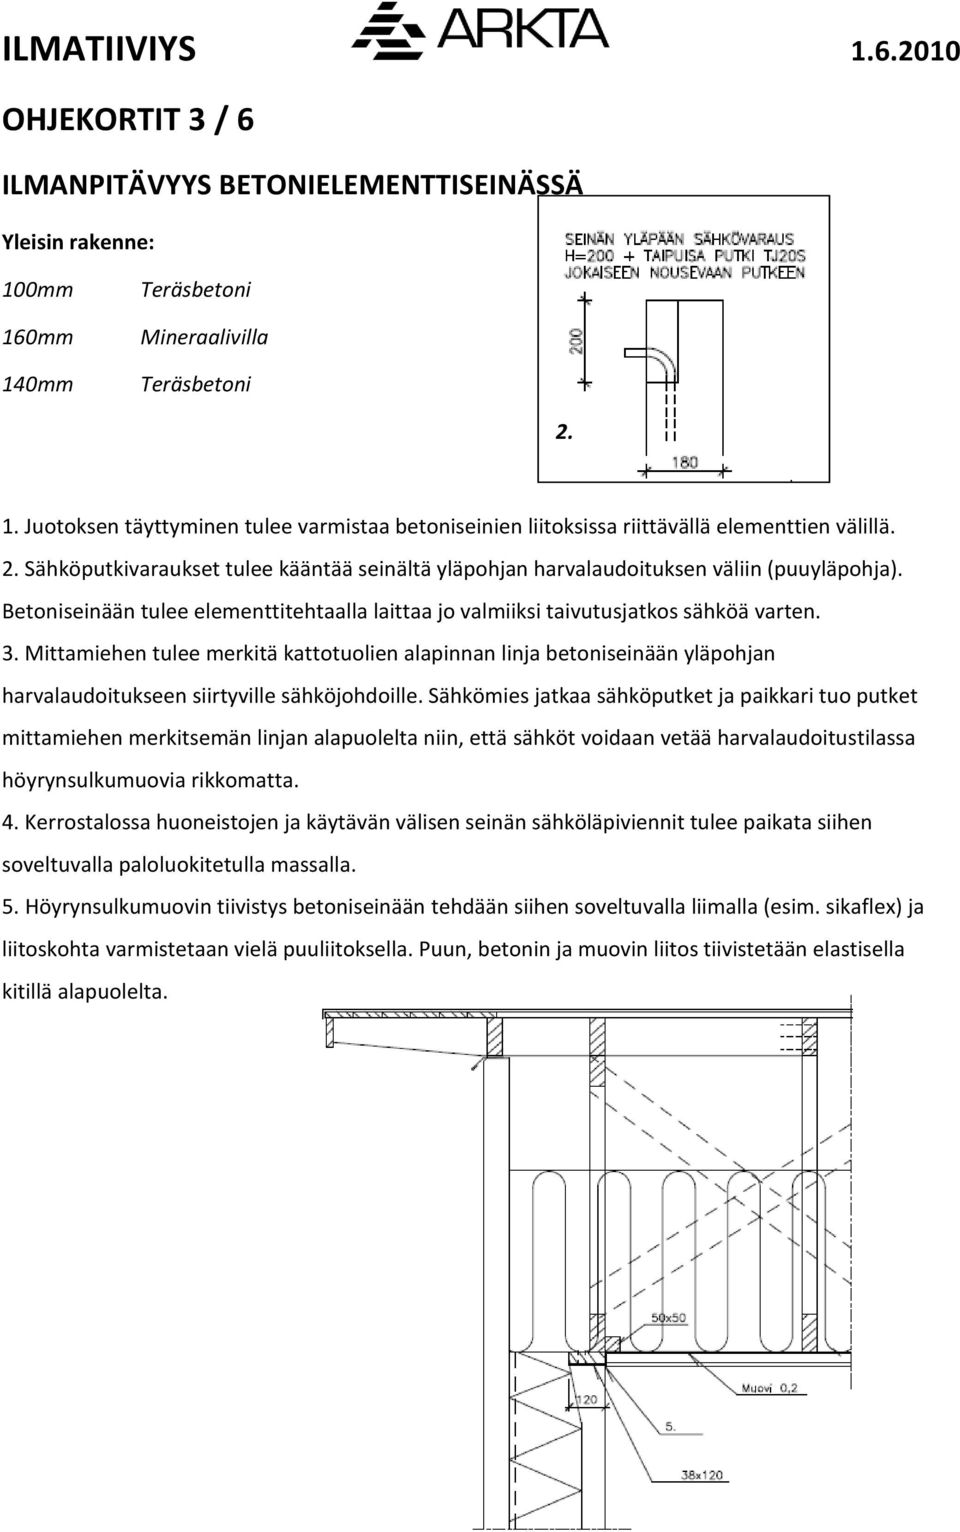 Mittamiehen tulee merkitä kattotuolien alapinnan linja betoniseinään yläpohjan harvalaudoitukseen siirtyville sähköjohdoille.